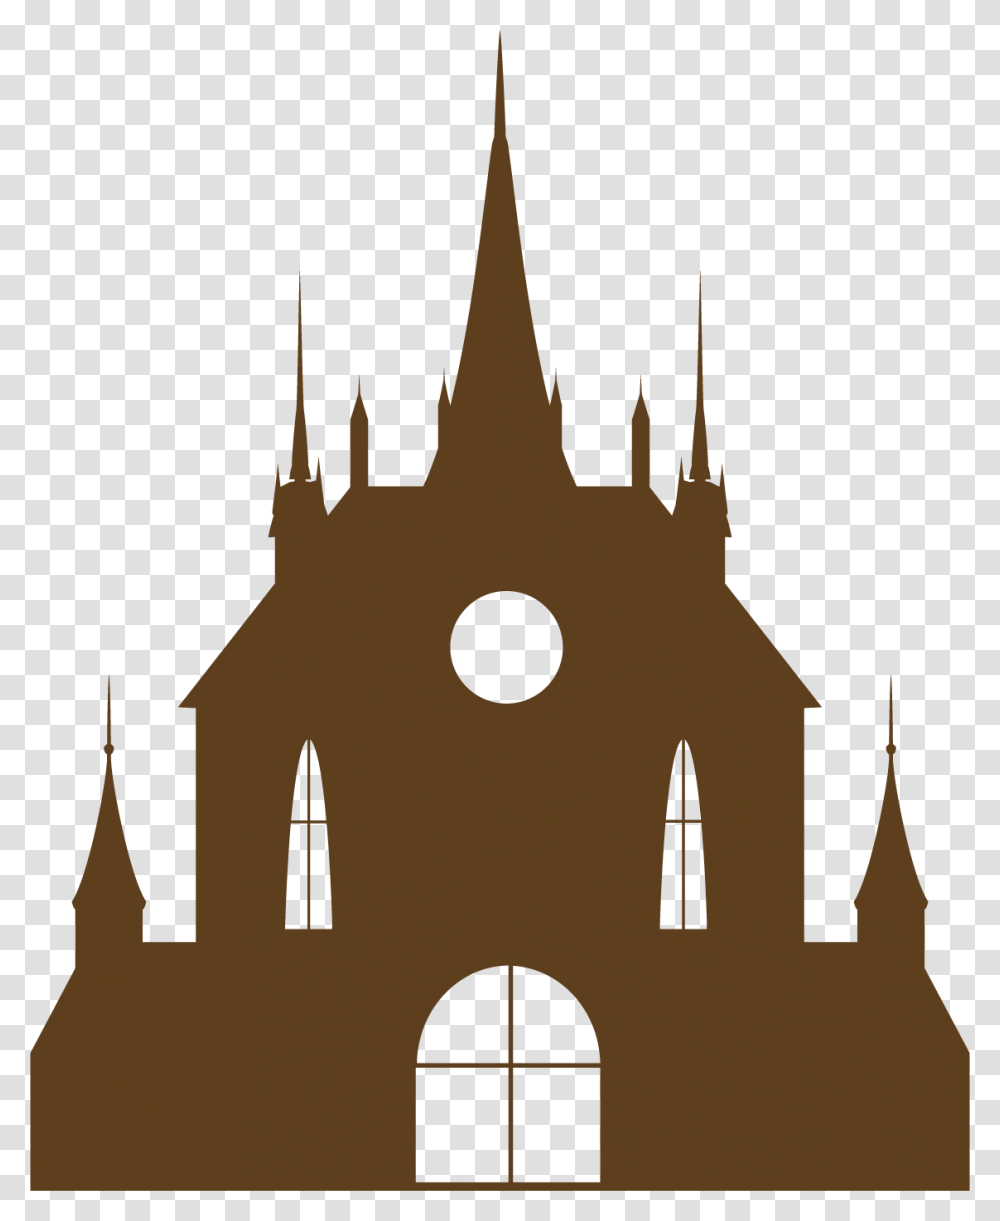 Castle Euclidean Vector Castle Graphic, Architecture, Building, Silhouette, Church Transparent Png